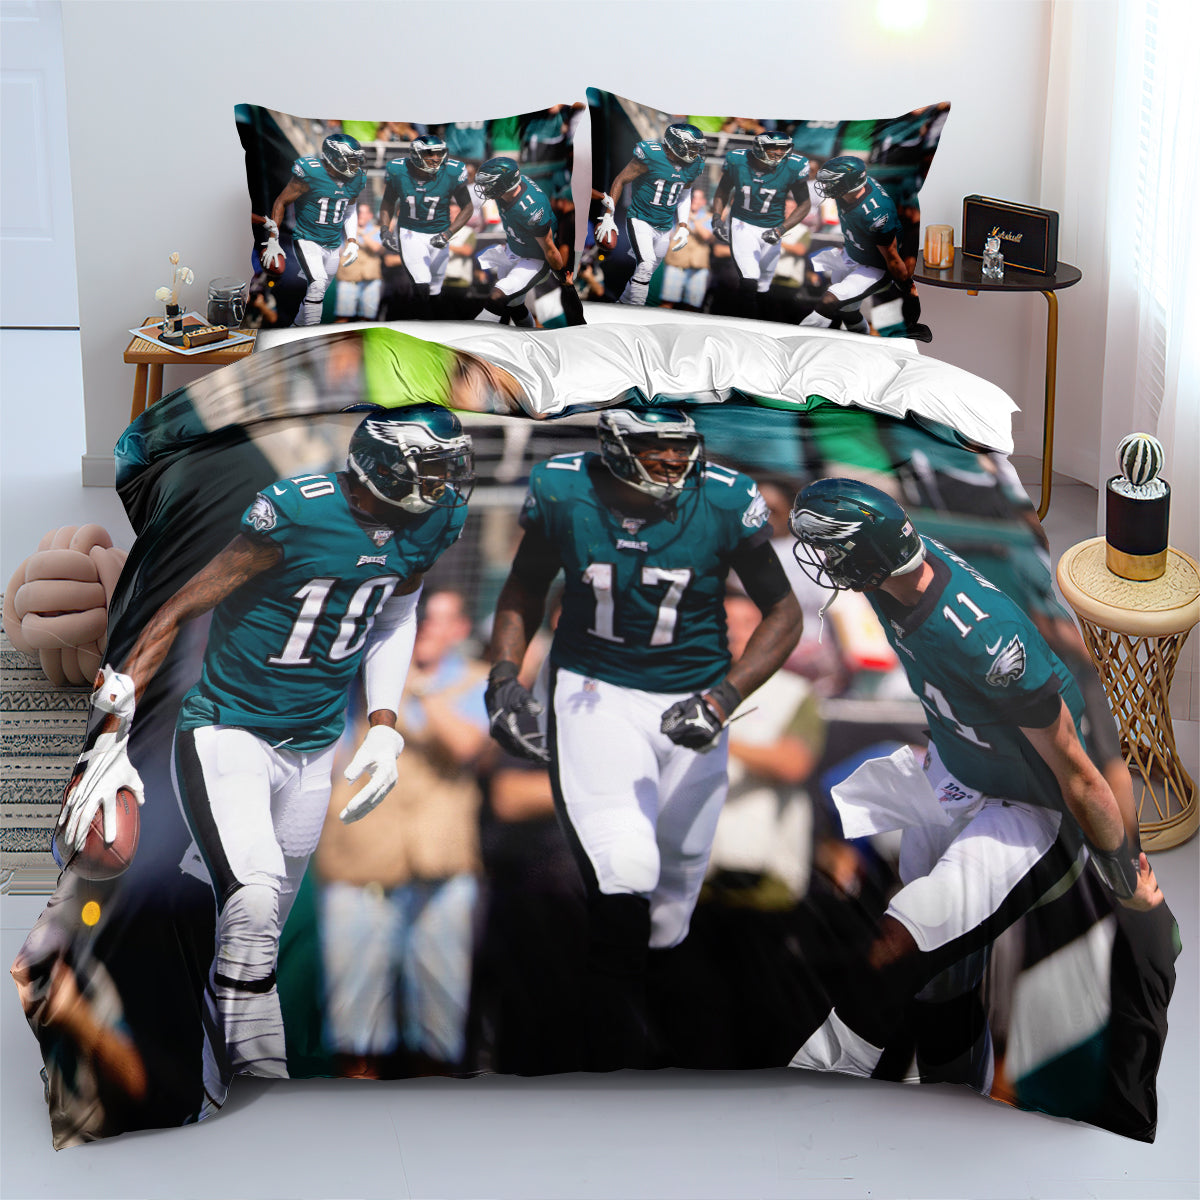 Philadelphia Football Eagles Duvet Cover Quilt Cover Pillowcase Bedding Set